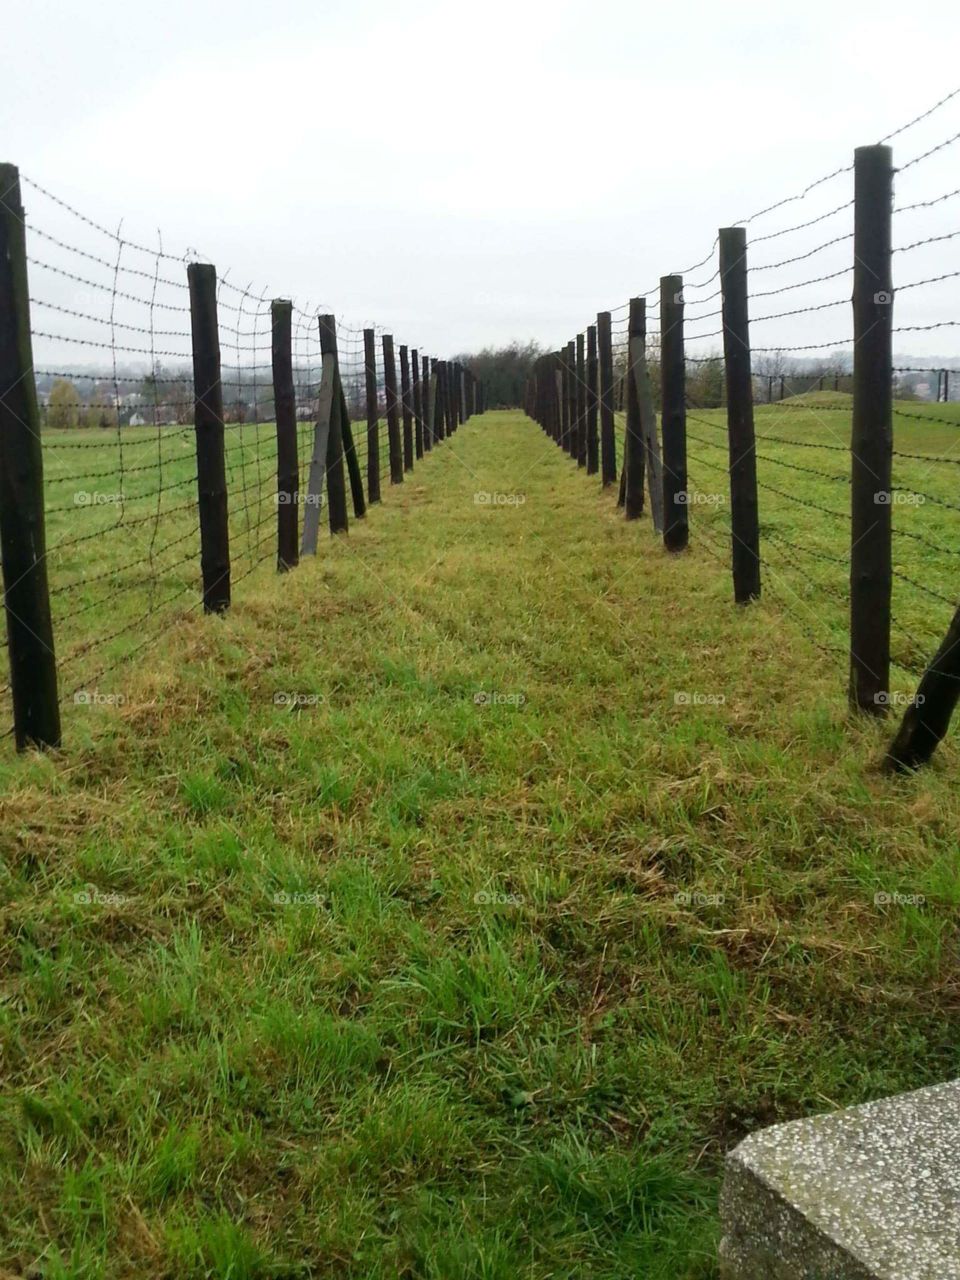 walls in german extermination camp in poland, taken in oct. 2014